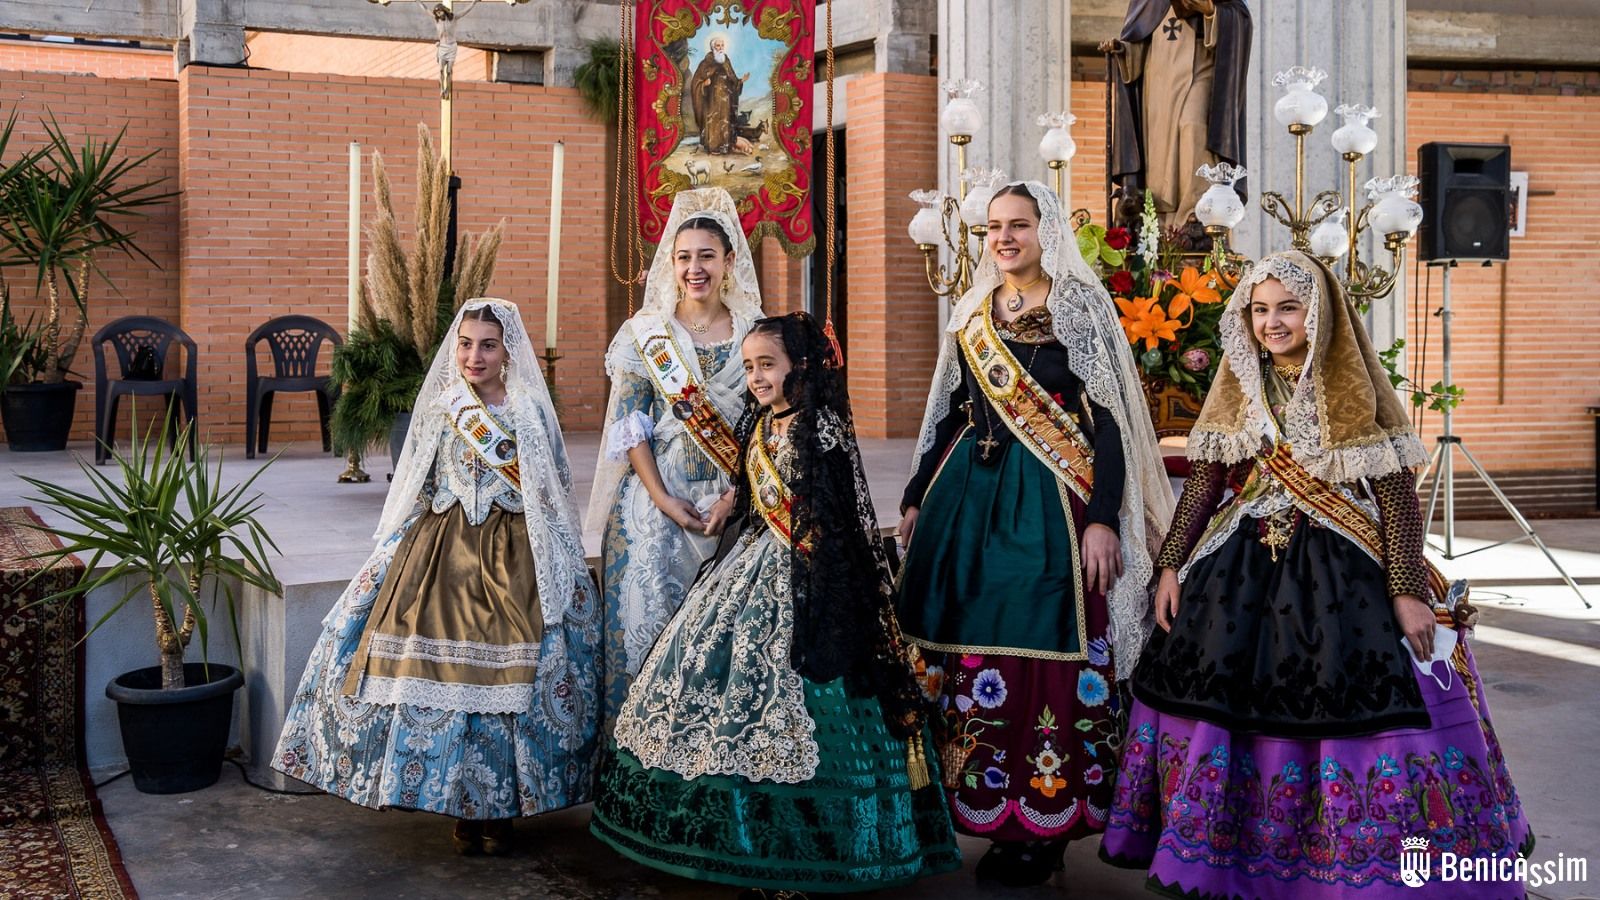 Las mejores fotos de la ofrenda y la procesión a Sant Antoni y Santa Àgueda en Benicàssim